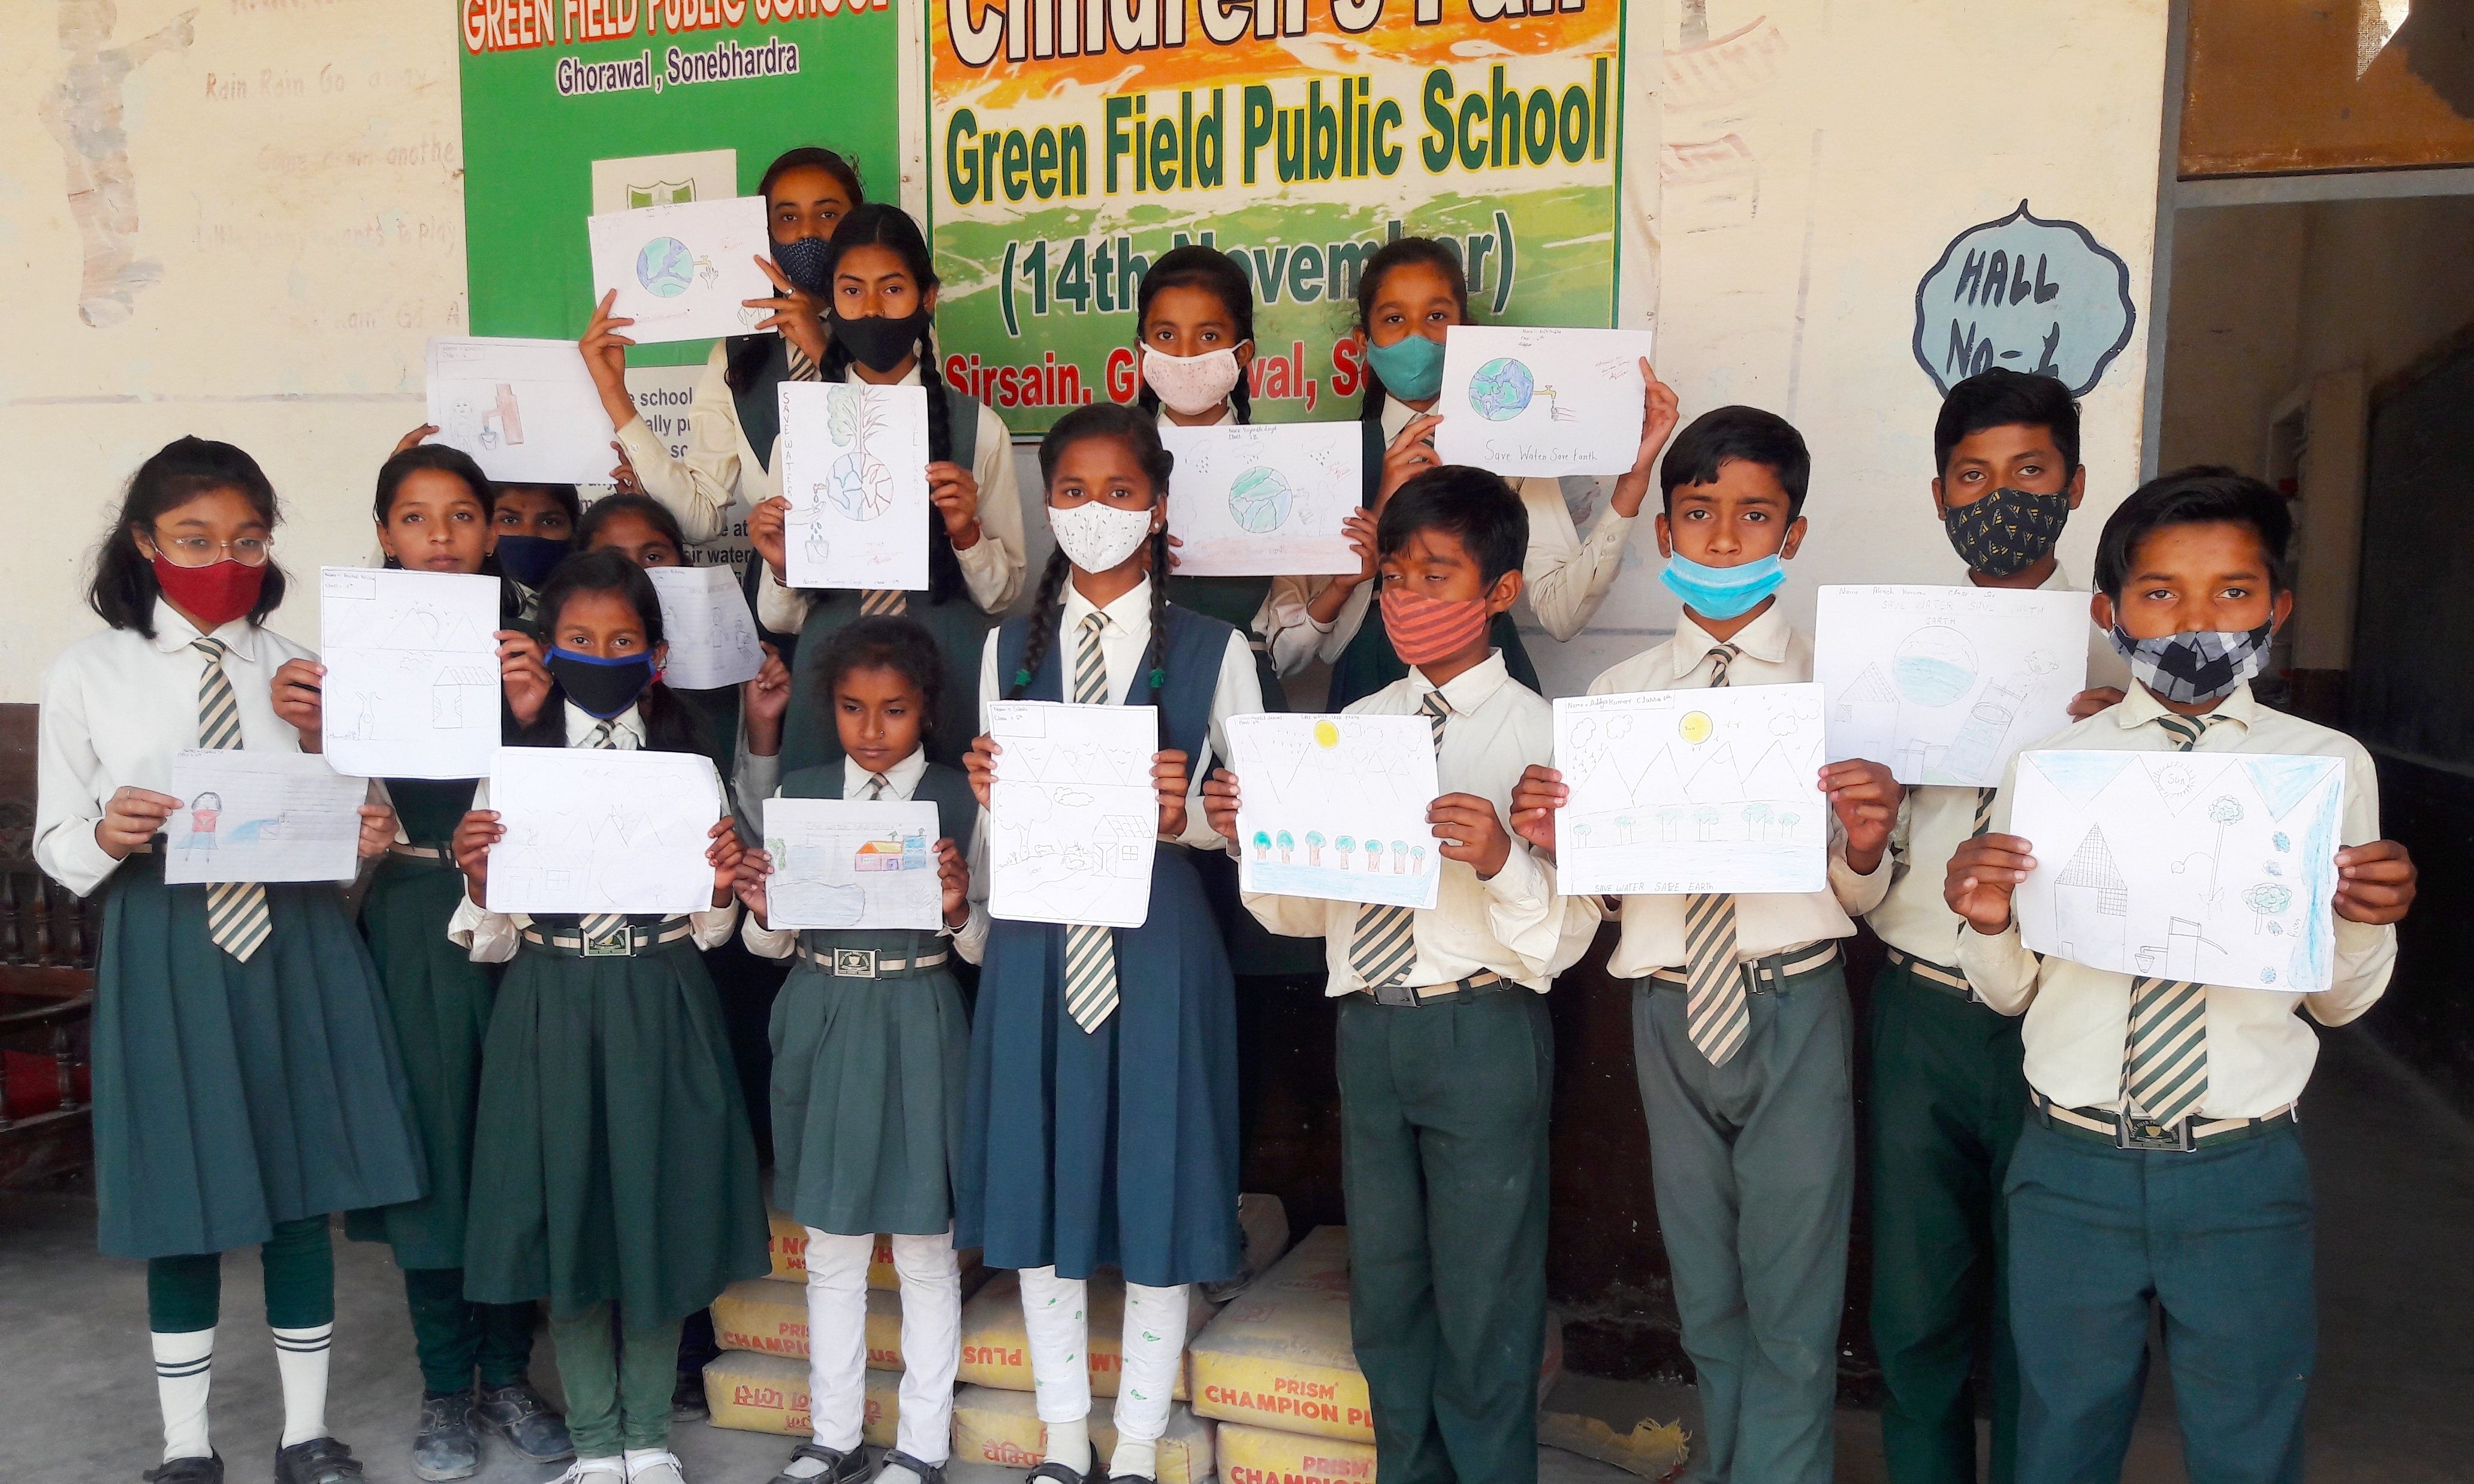 Des élèves participent à un concours lors de la Journée mondiale de l'eau dans une école située à Ghorawal.